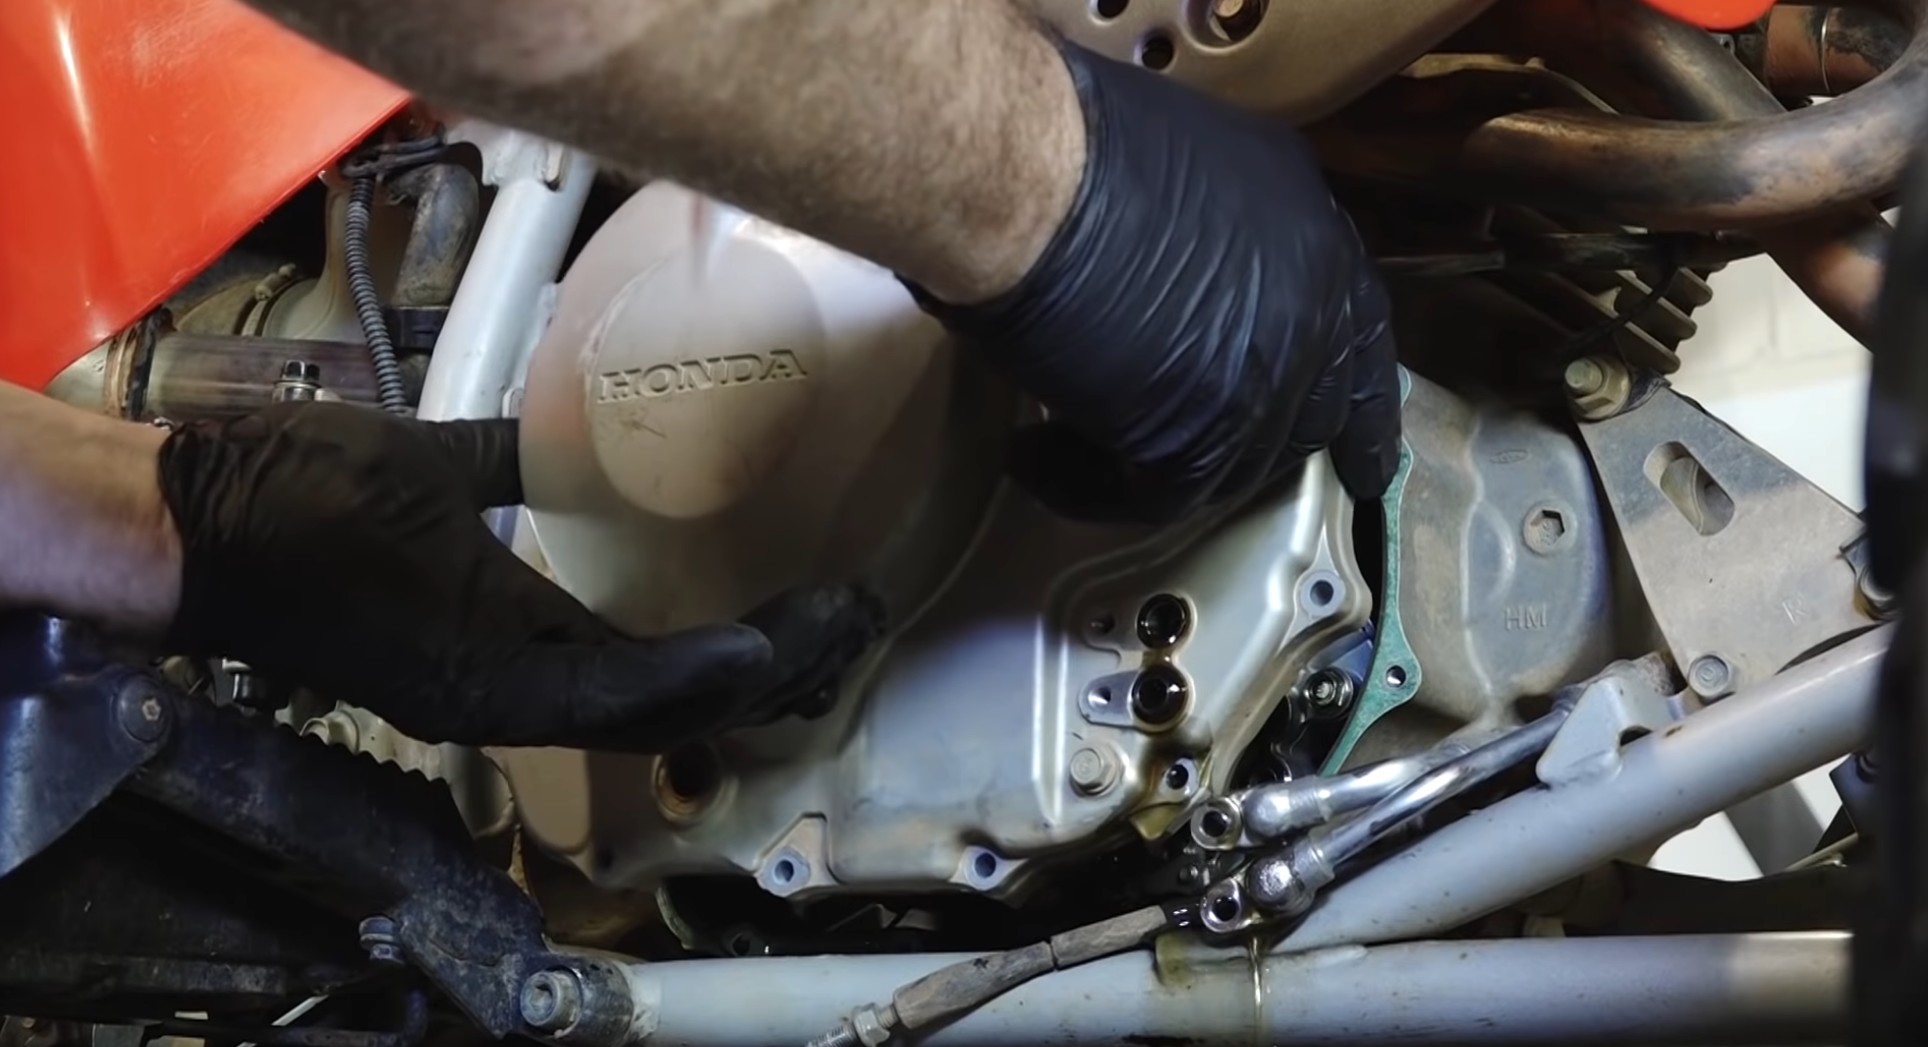 Honda TRX400 clutch plate removal